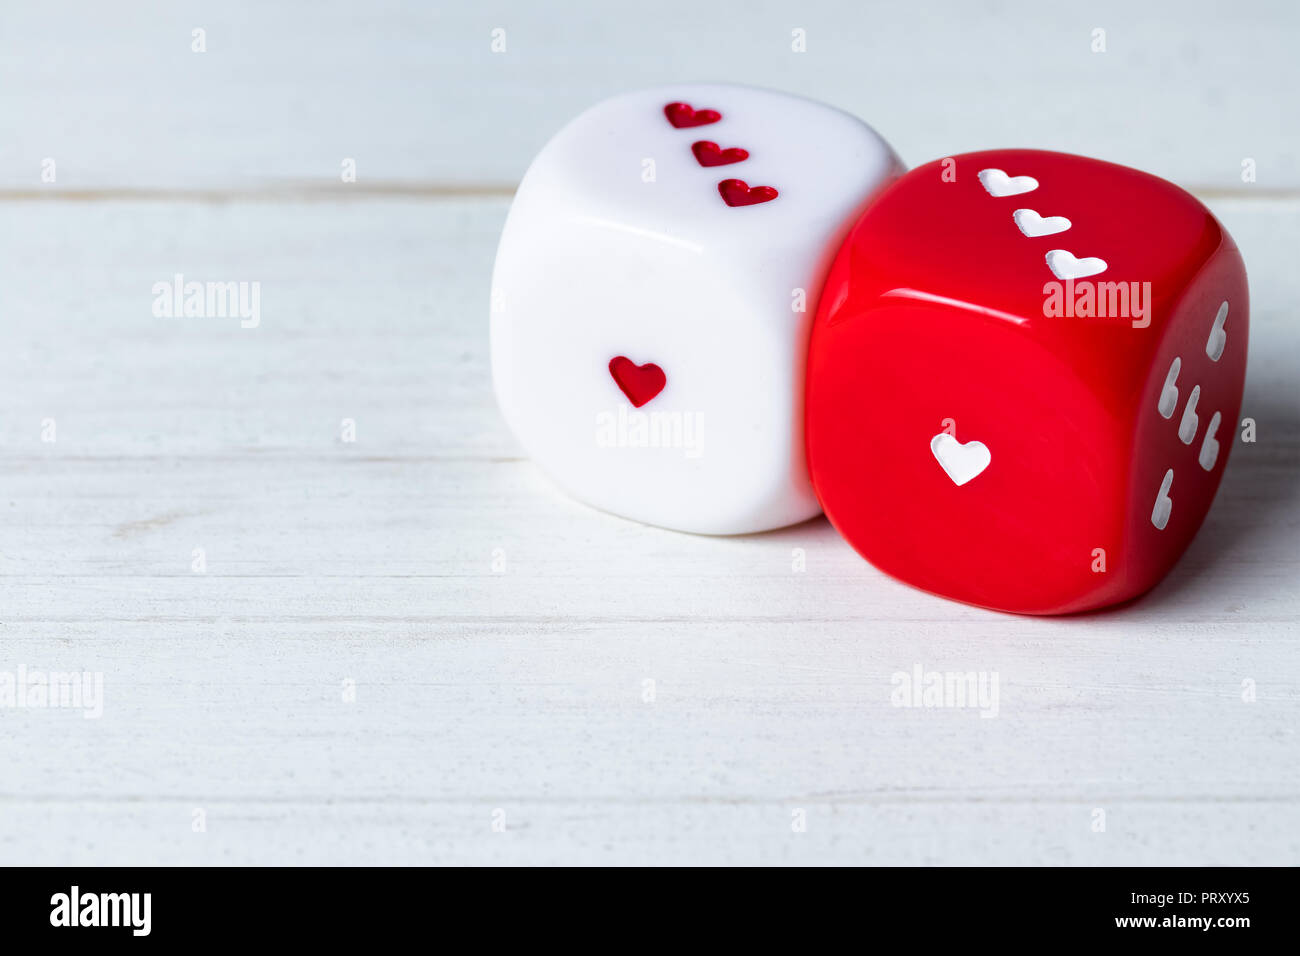 Zwei rote und weiße Valentinstag Herz Würfel auf Holz- Hintergrund.  Kopieren Sie Speicherplatz auf dem links unten Stockfotografie - Alamy